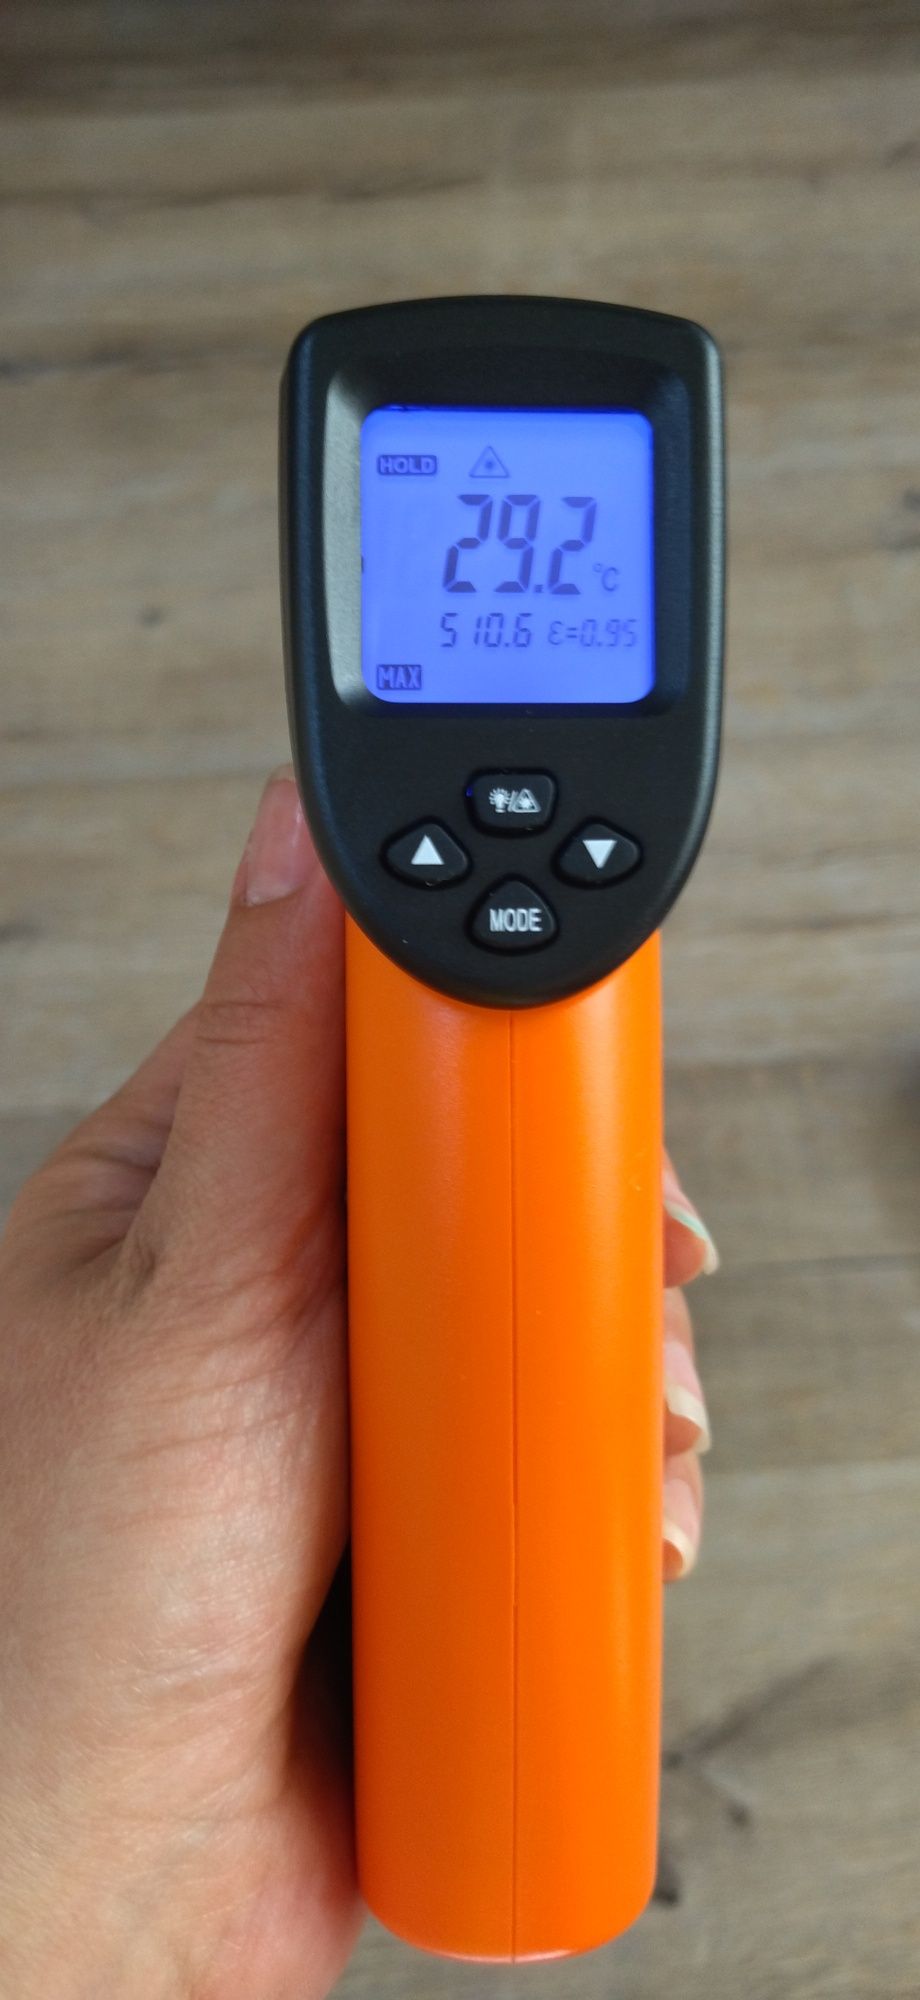 Пирометр -50+1300°промышленный инфракрасный безконтактный термометр.